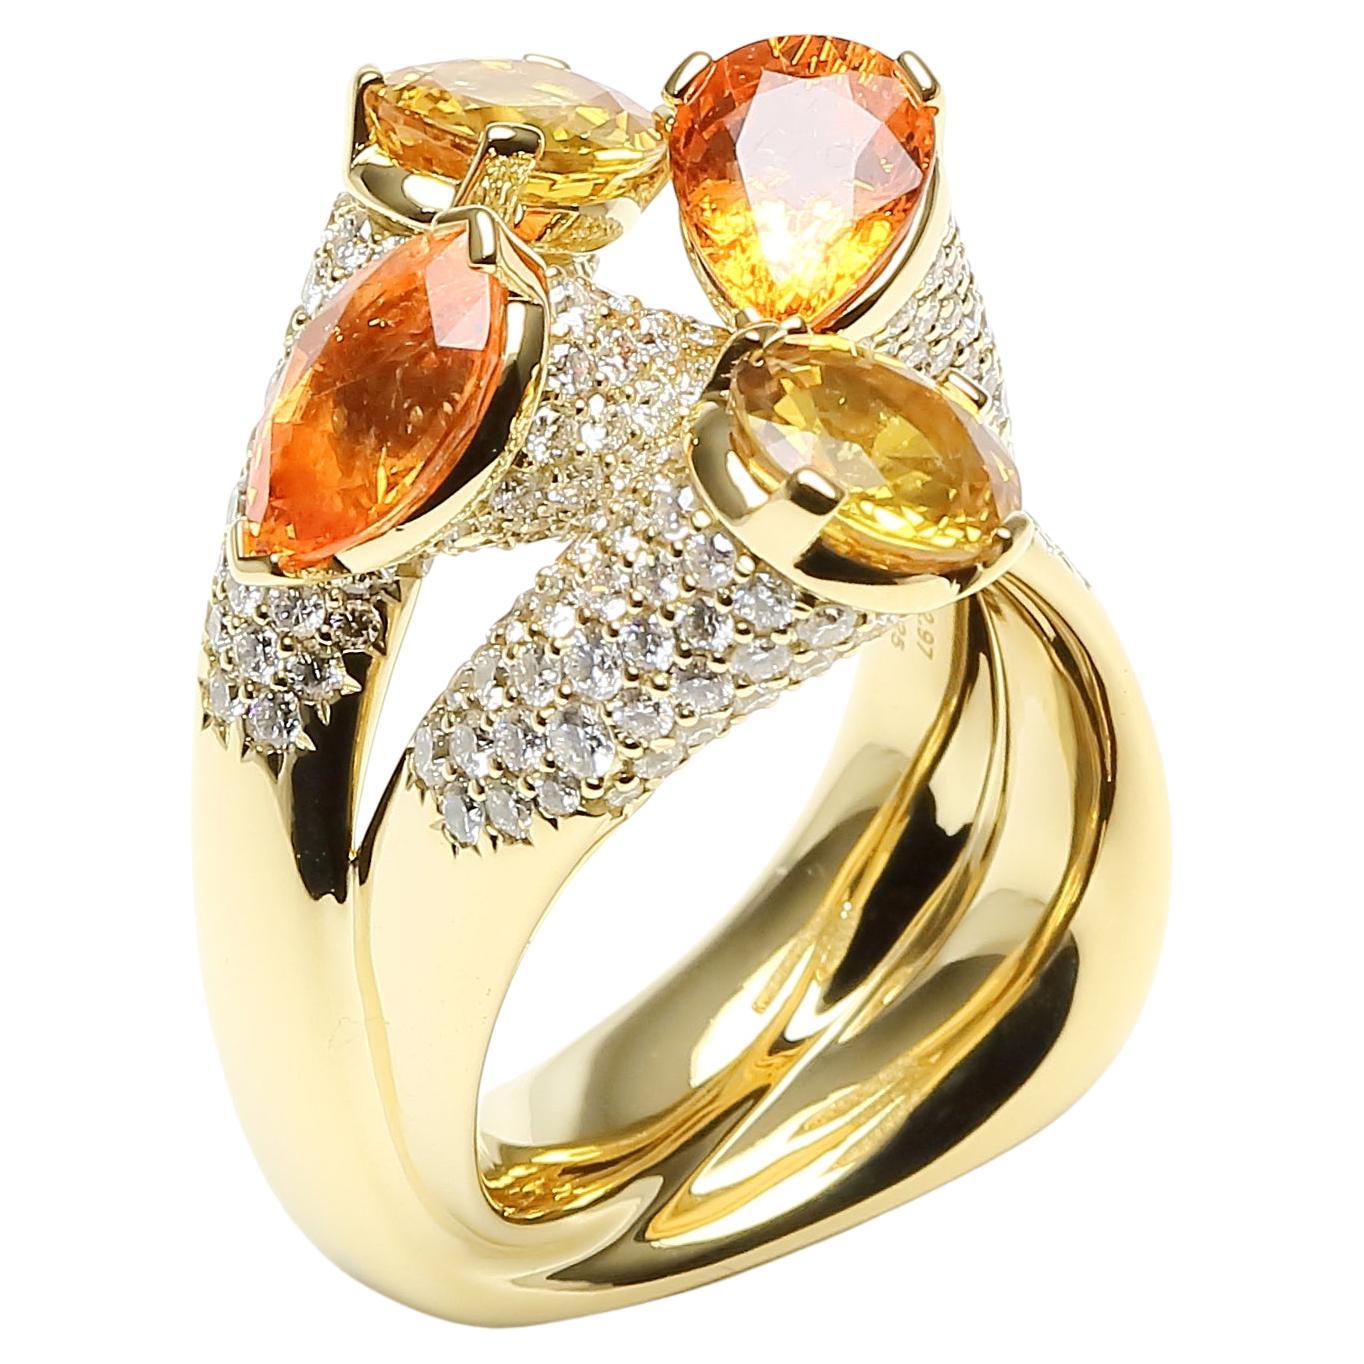 Einzigartiger Cocktail-Ring aus 18 Karat Gelbgold mit Diamanten, orange-gelbem Saphir